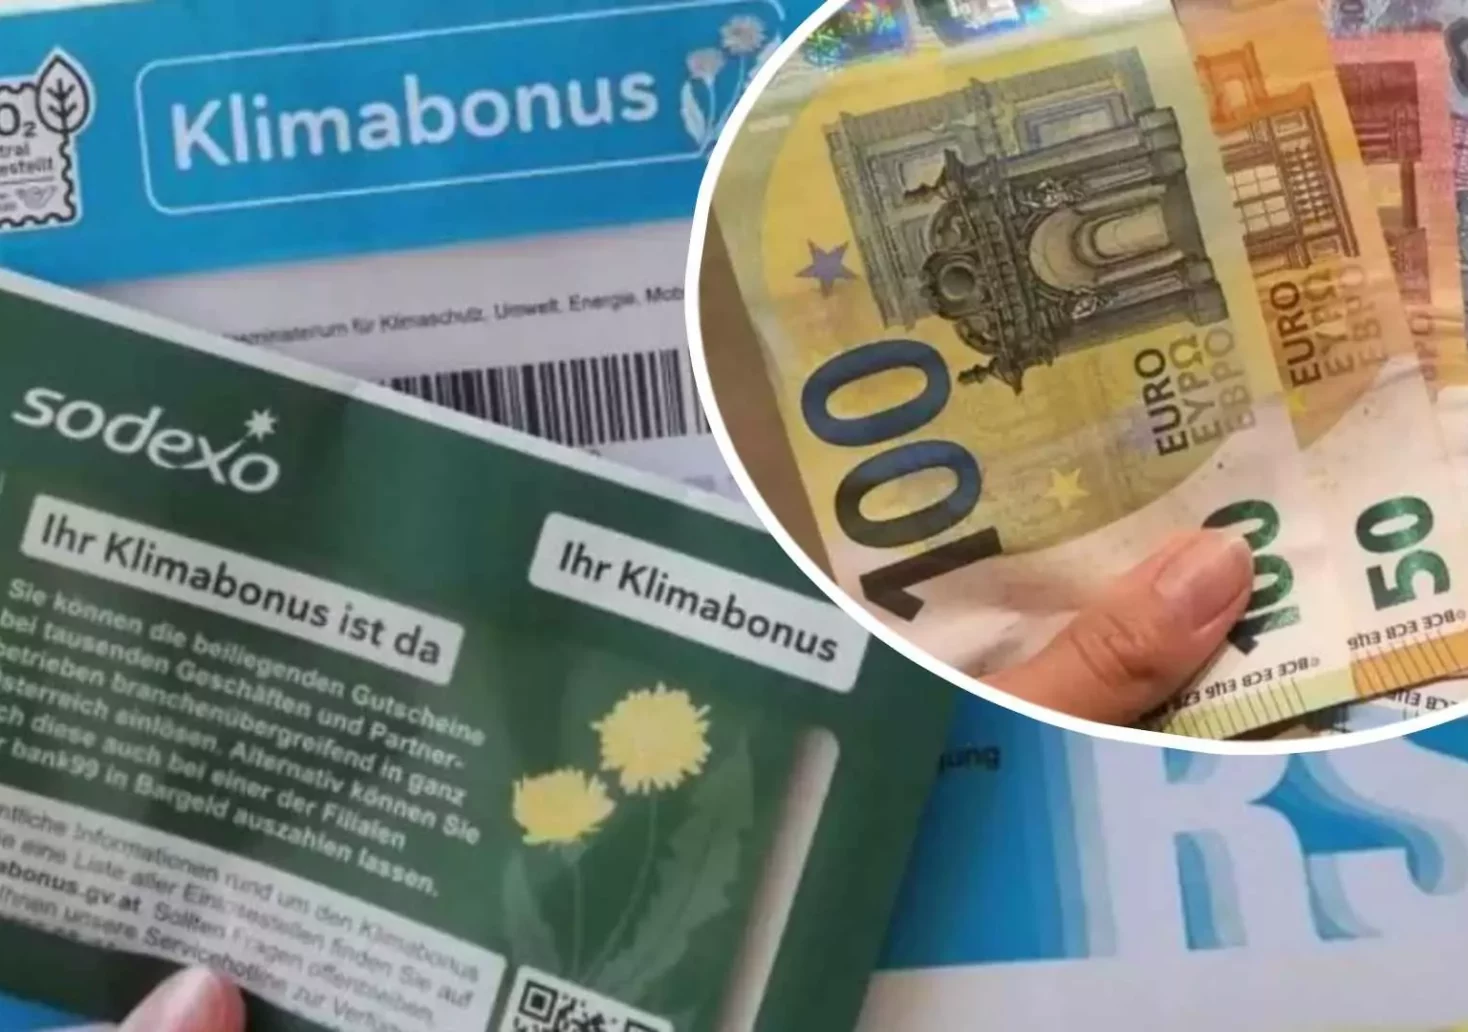 Foto in Beitrag von 5min.at: Zu sehen ist eine Fotomontage von Bargeld und dem Klimabonus-Brief.